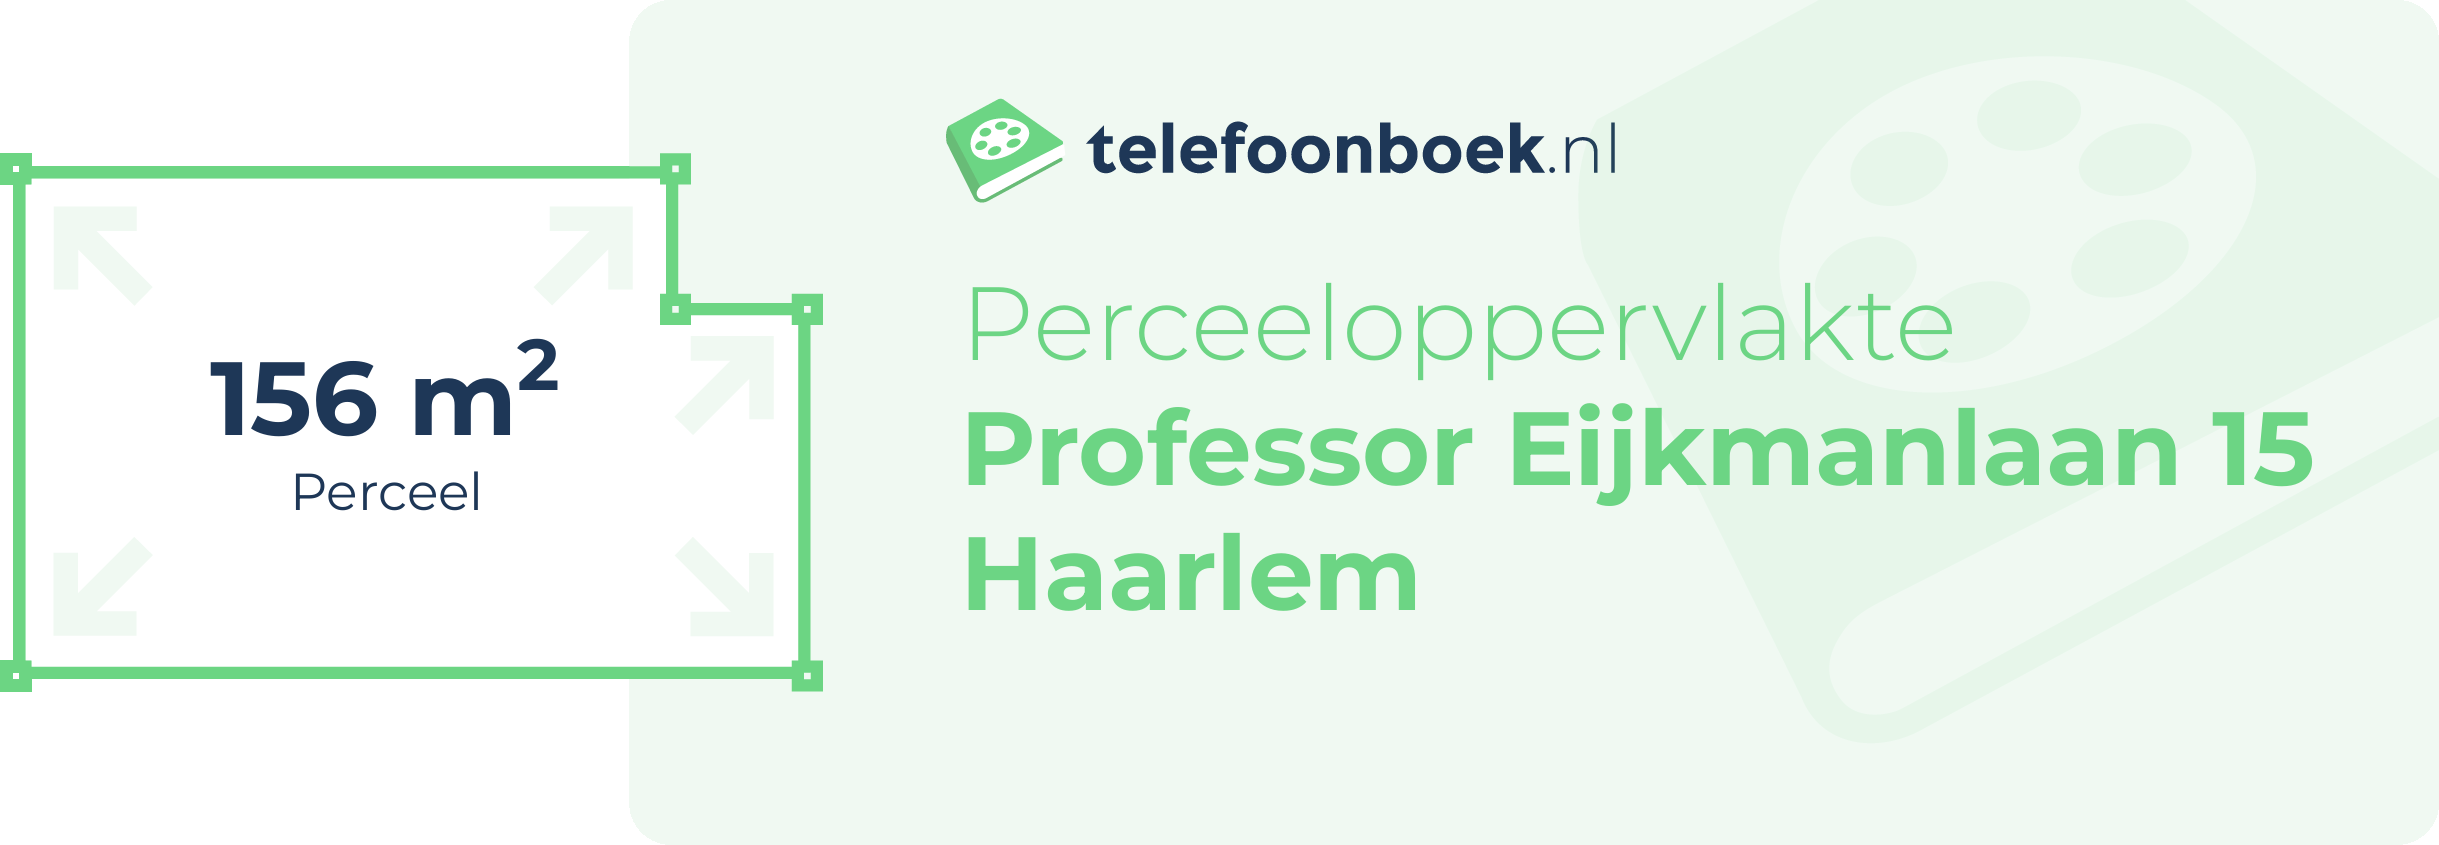 Perceeloppervlakte Professor Eijkmanlaan 15 Haarlem